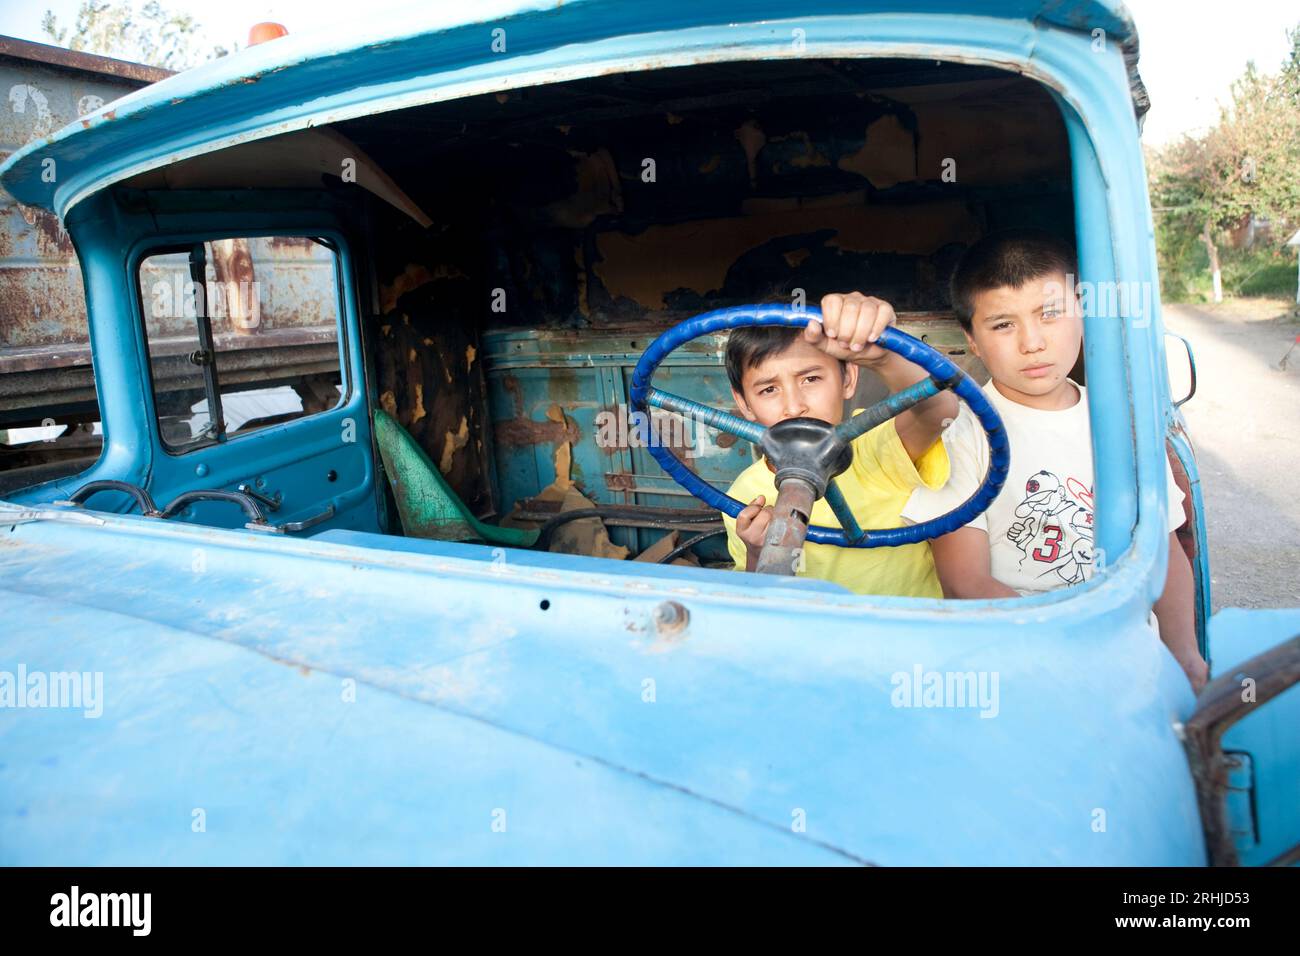 Des enfants jouent dans la coquille rouillée d'un vieux camion soviétique à l'intérieur d'un camp pour personnes déplacées (PDI) dans le quartier Sharq d'Osh, au Kirghizistan Banque D'Images